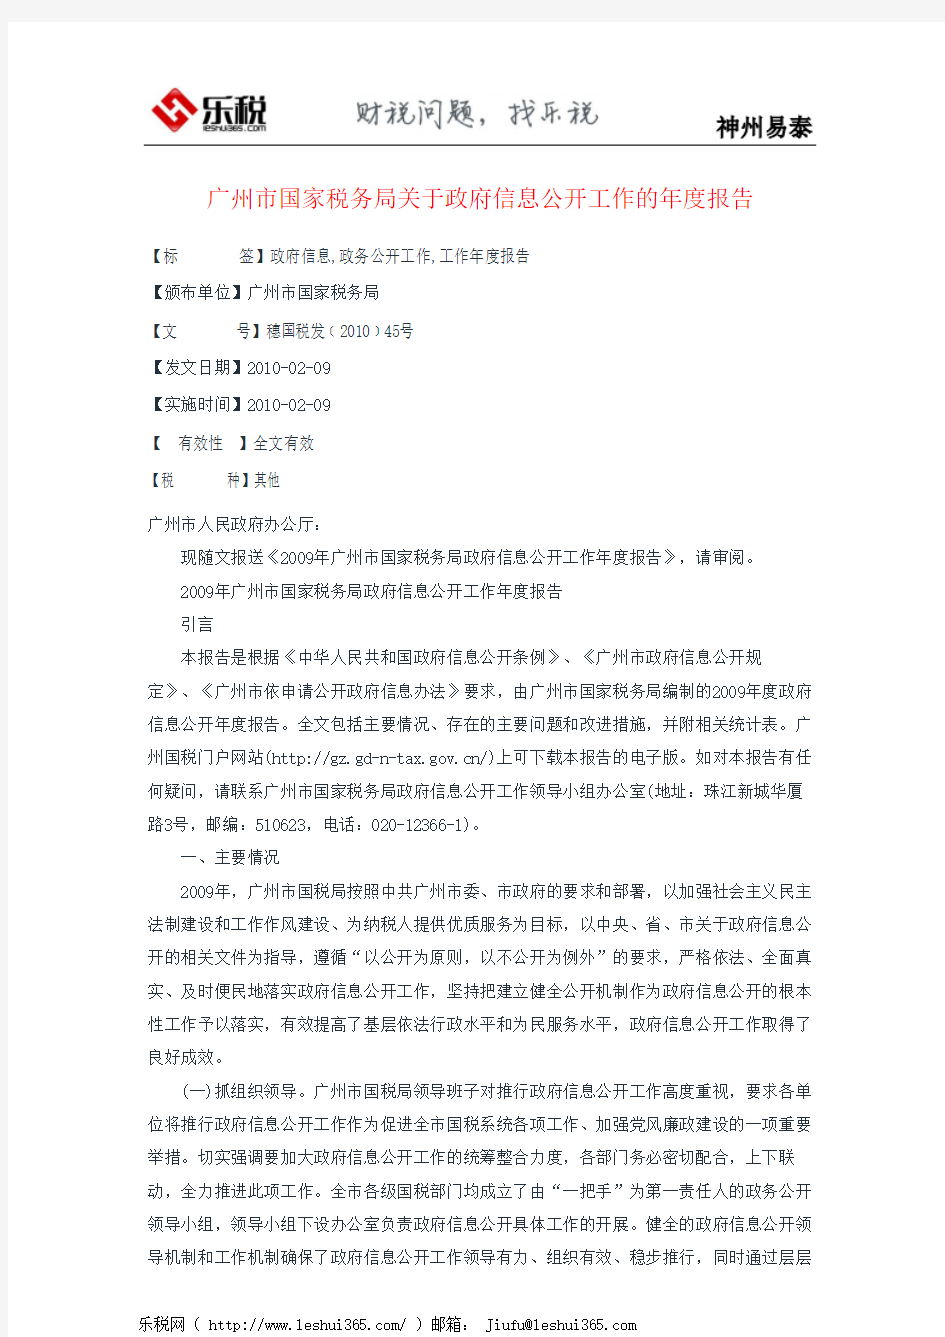 广州市国家税务局关于政府信息公开工作的年度报告